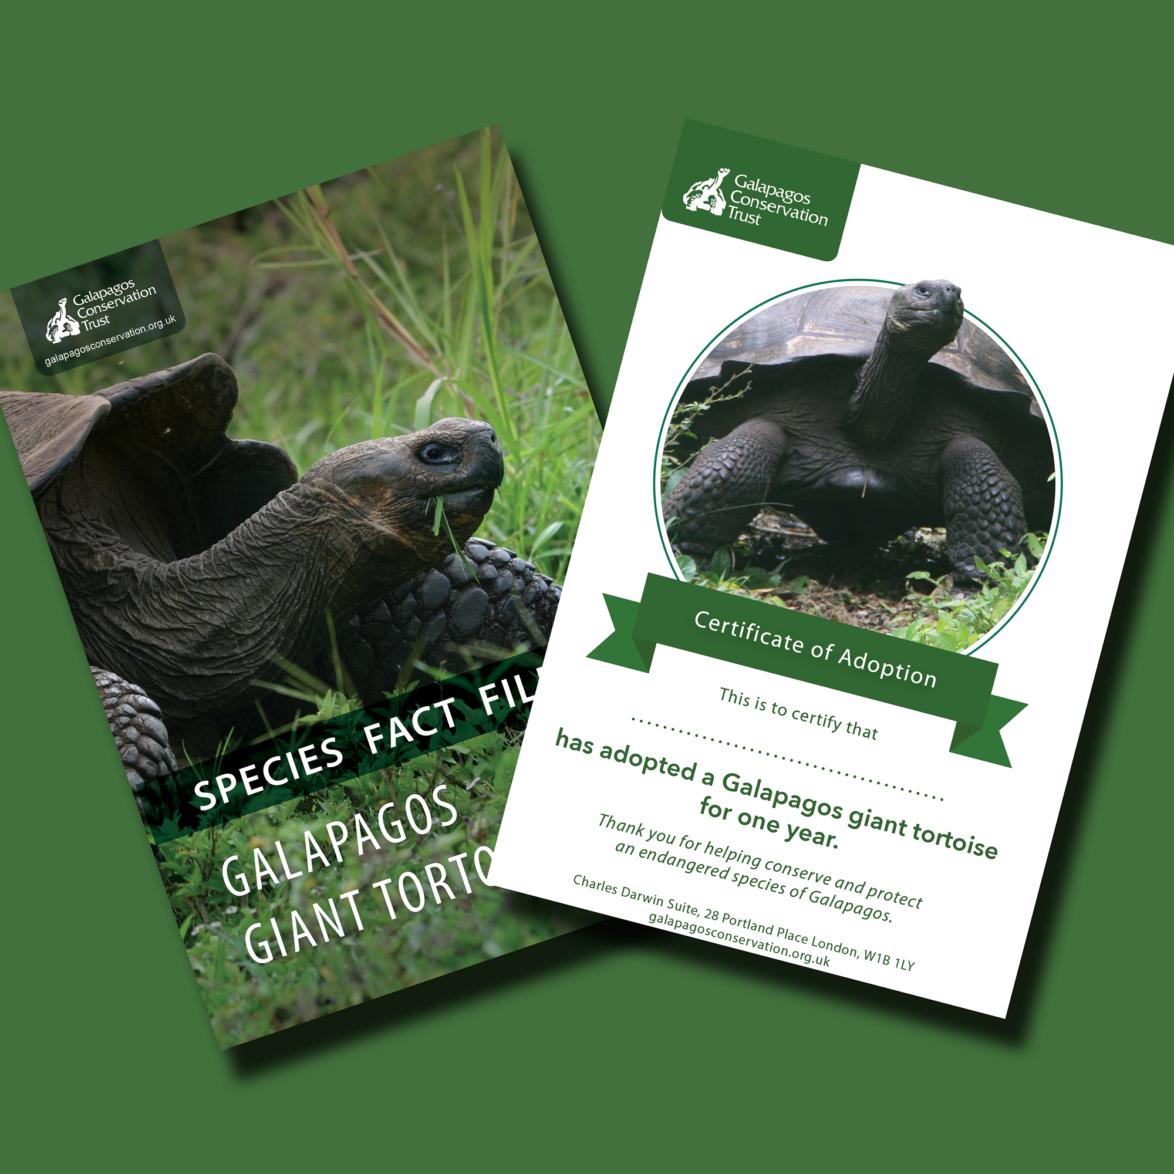 Adopt a Galapagos giant tortoise